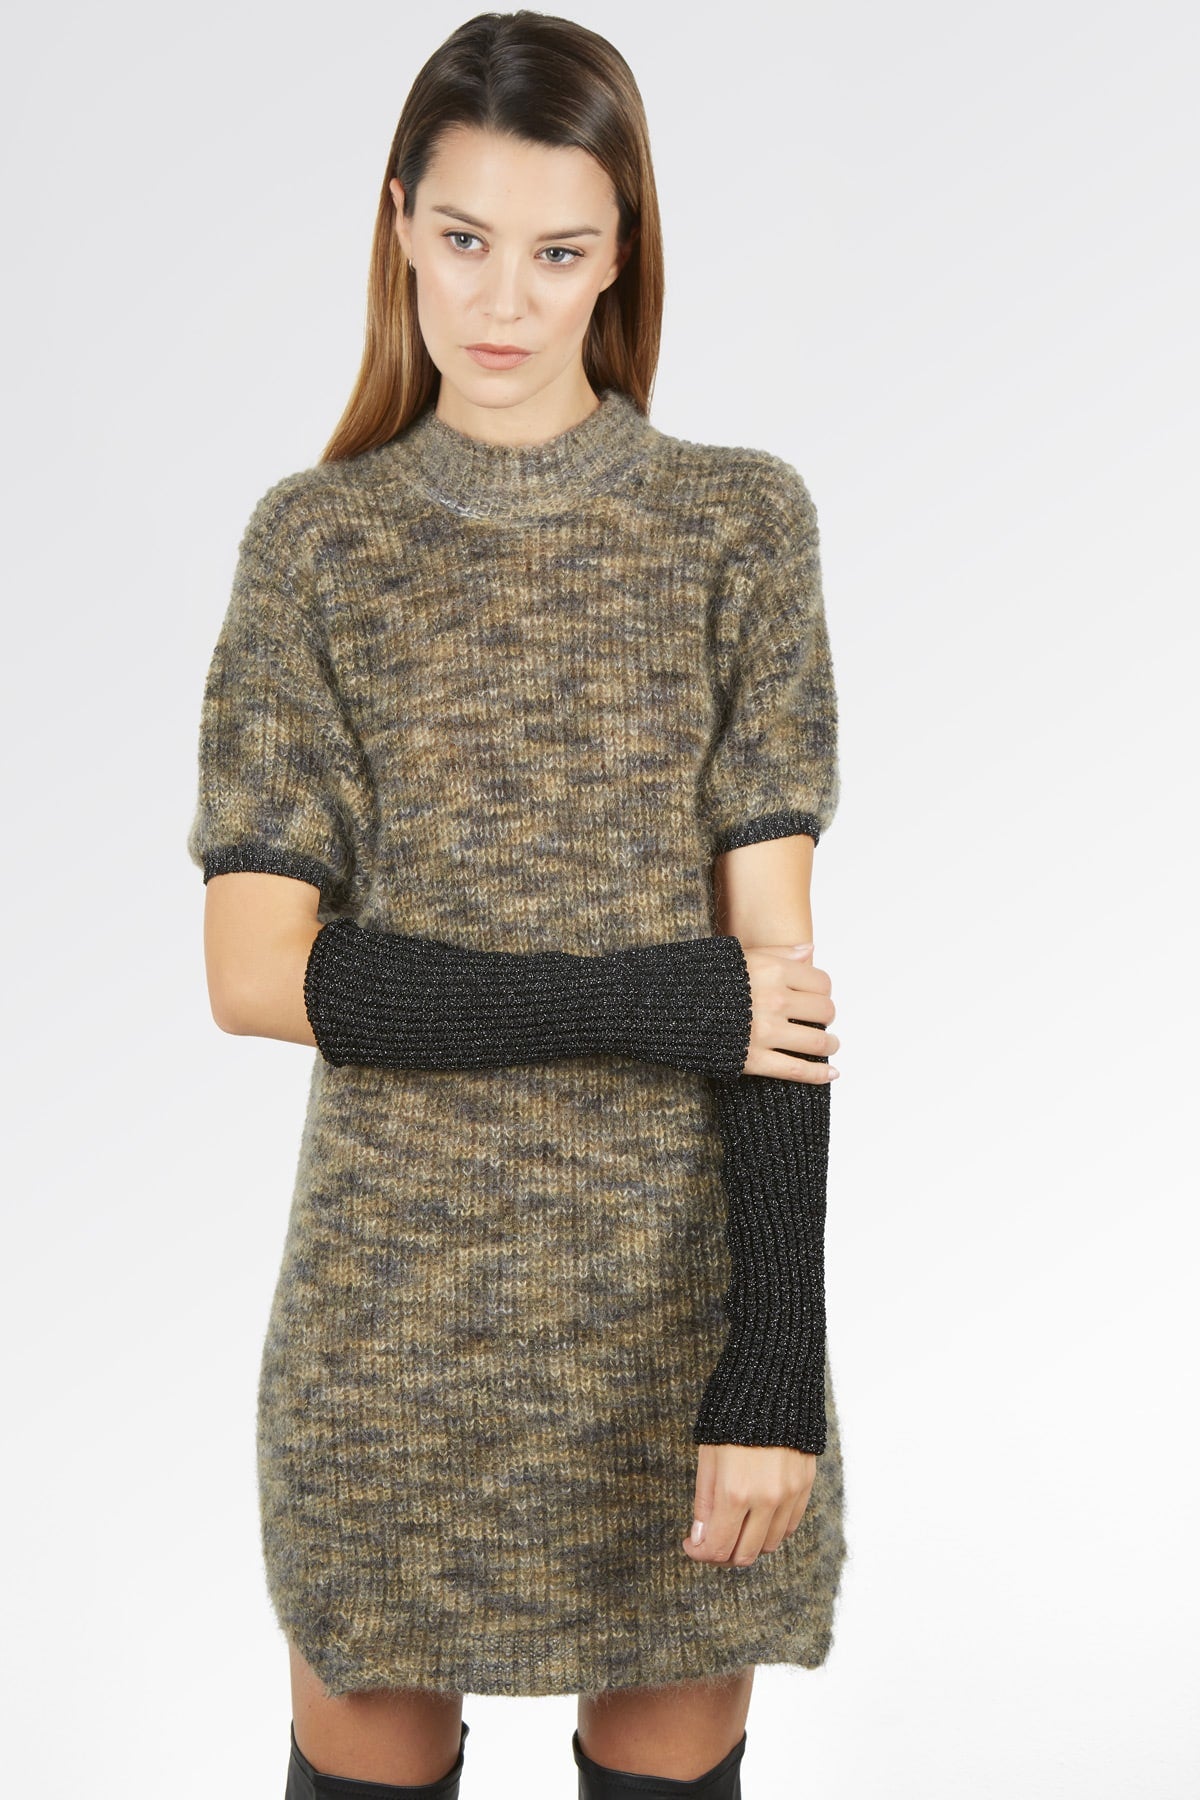 Pulloverkleid – Damen, Herbst/Winter – Wollmischung | Brunella Gori